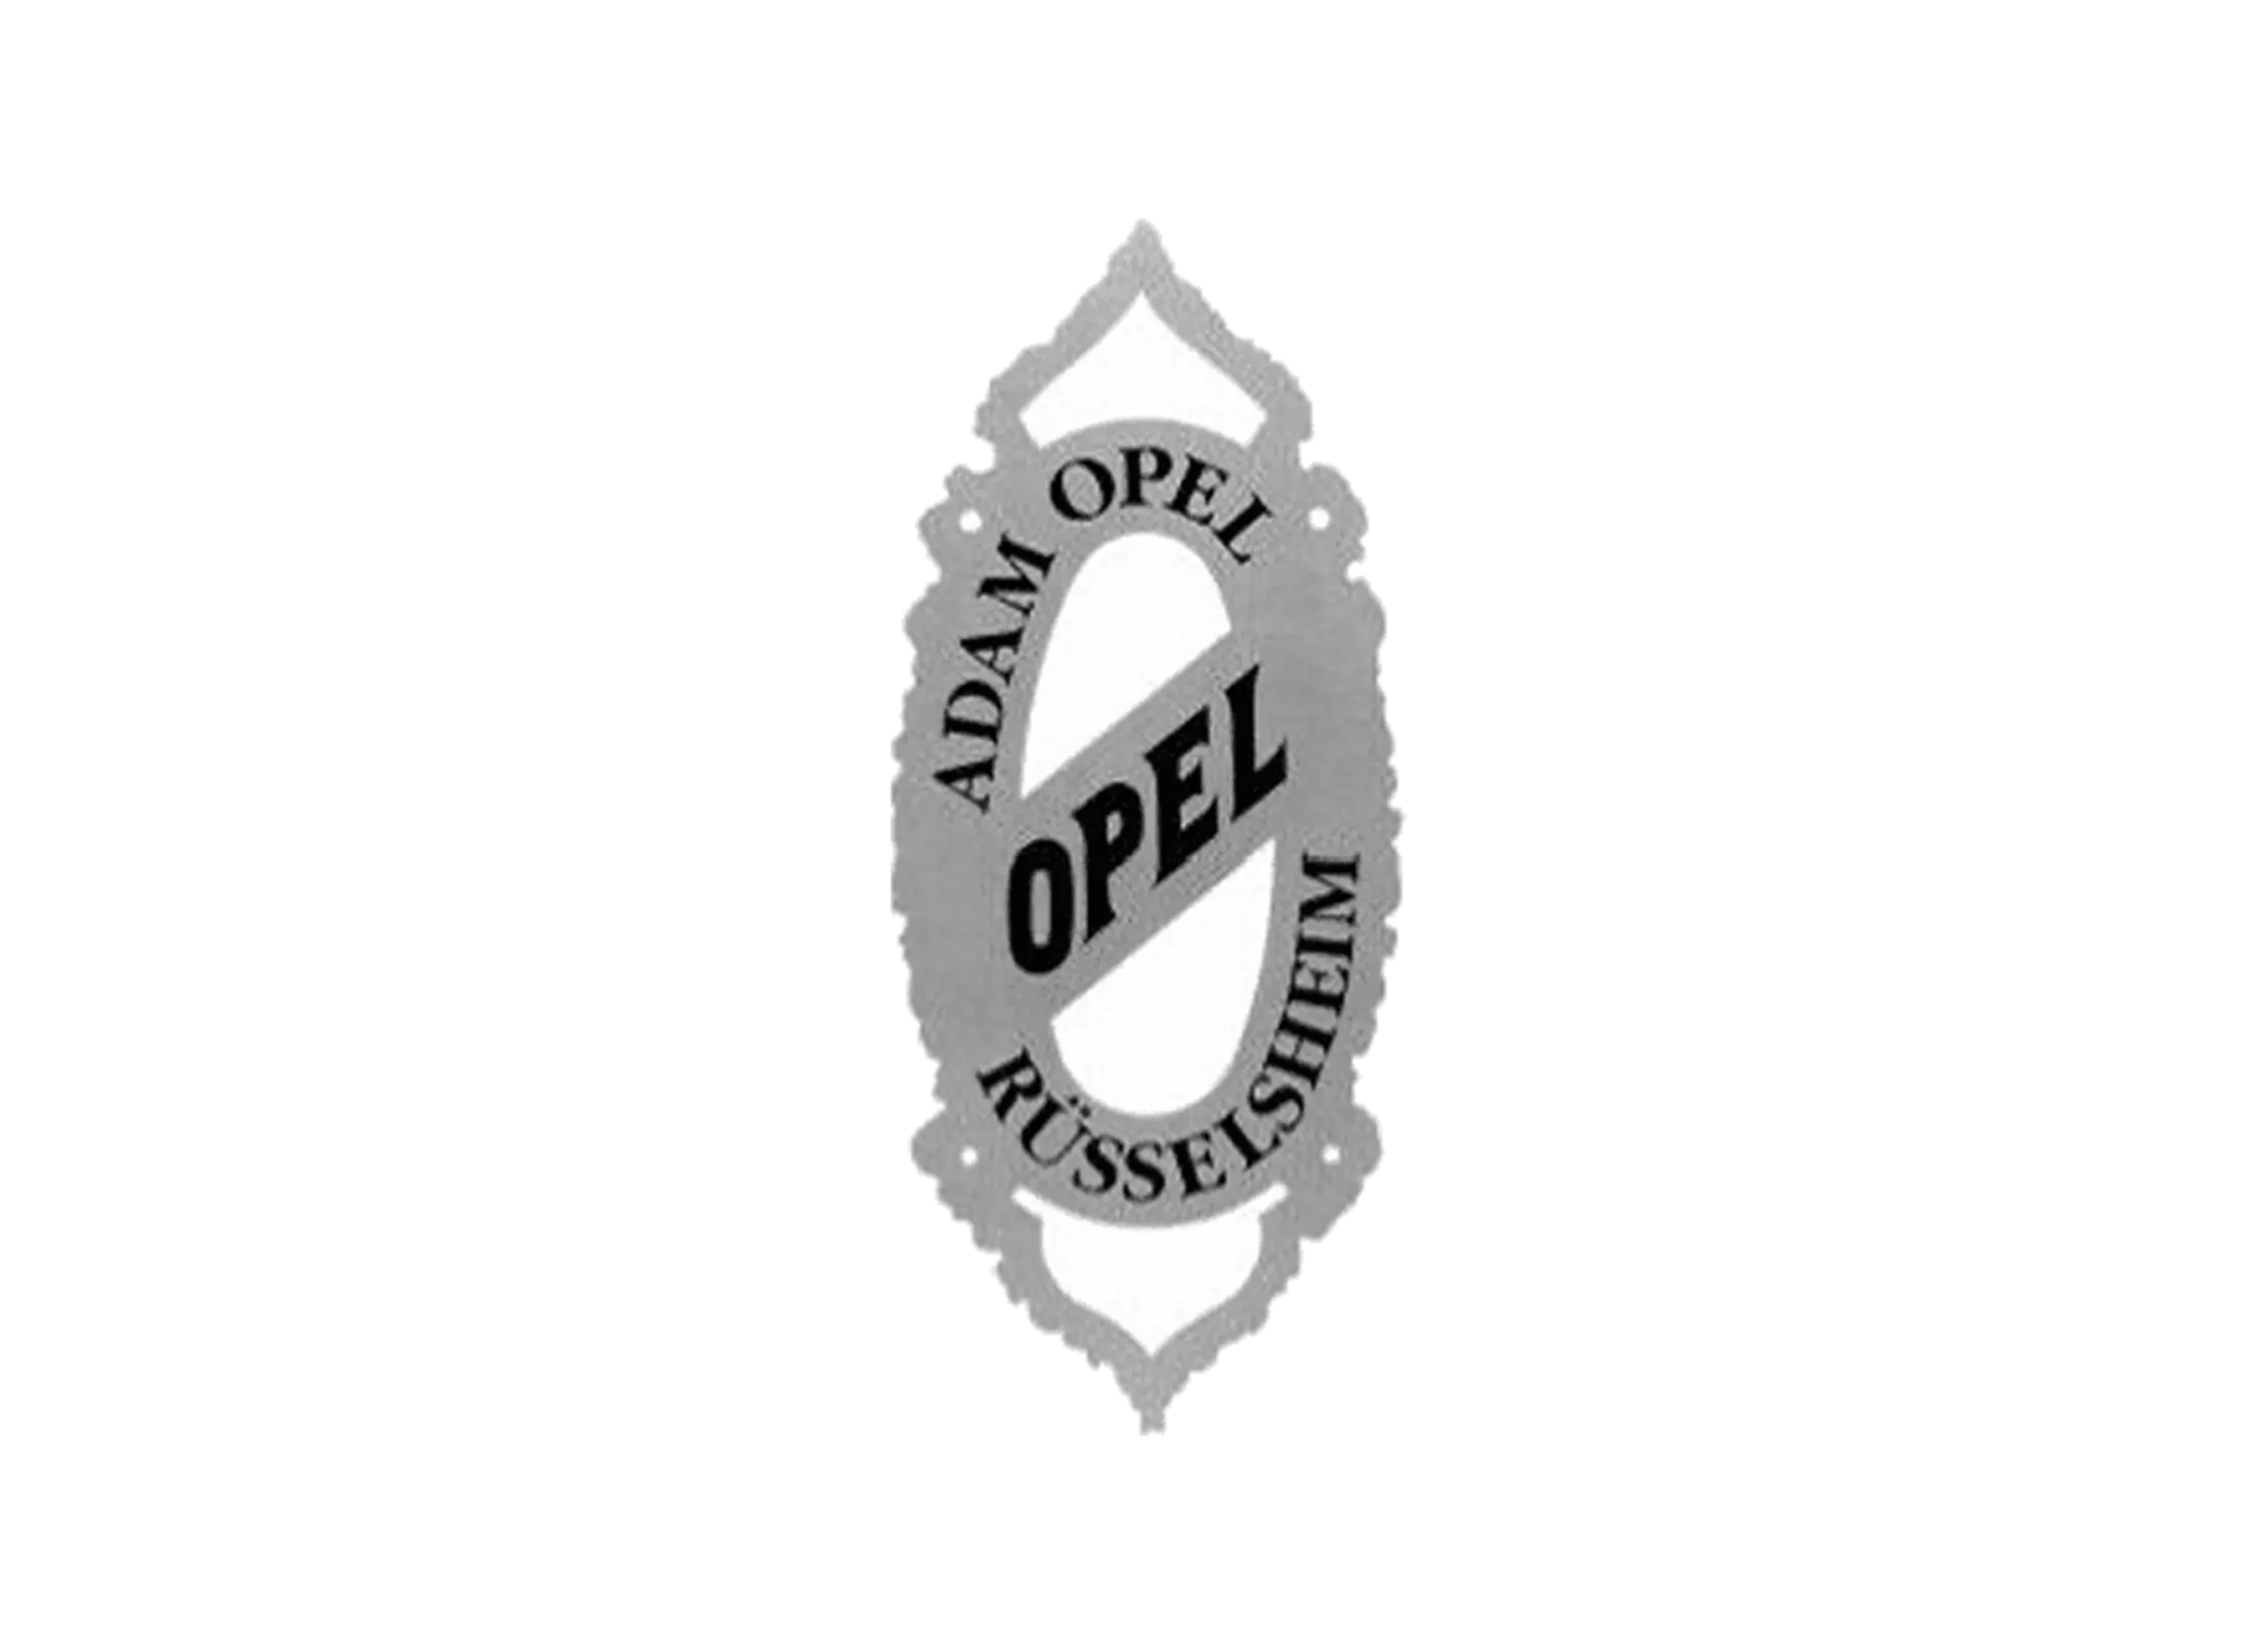 Opel logo 1889-1893